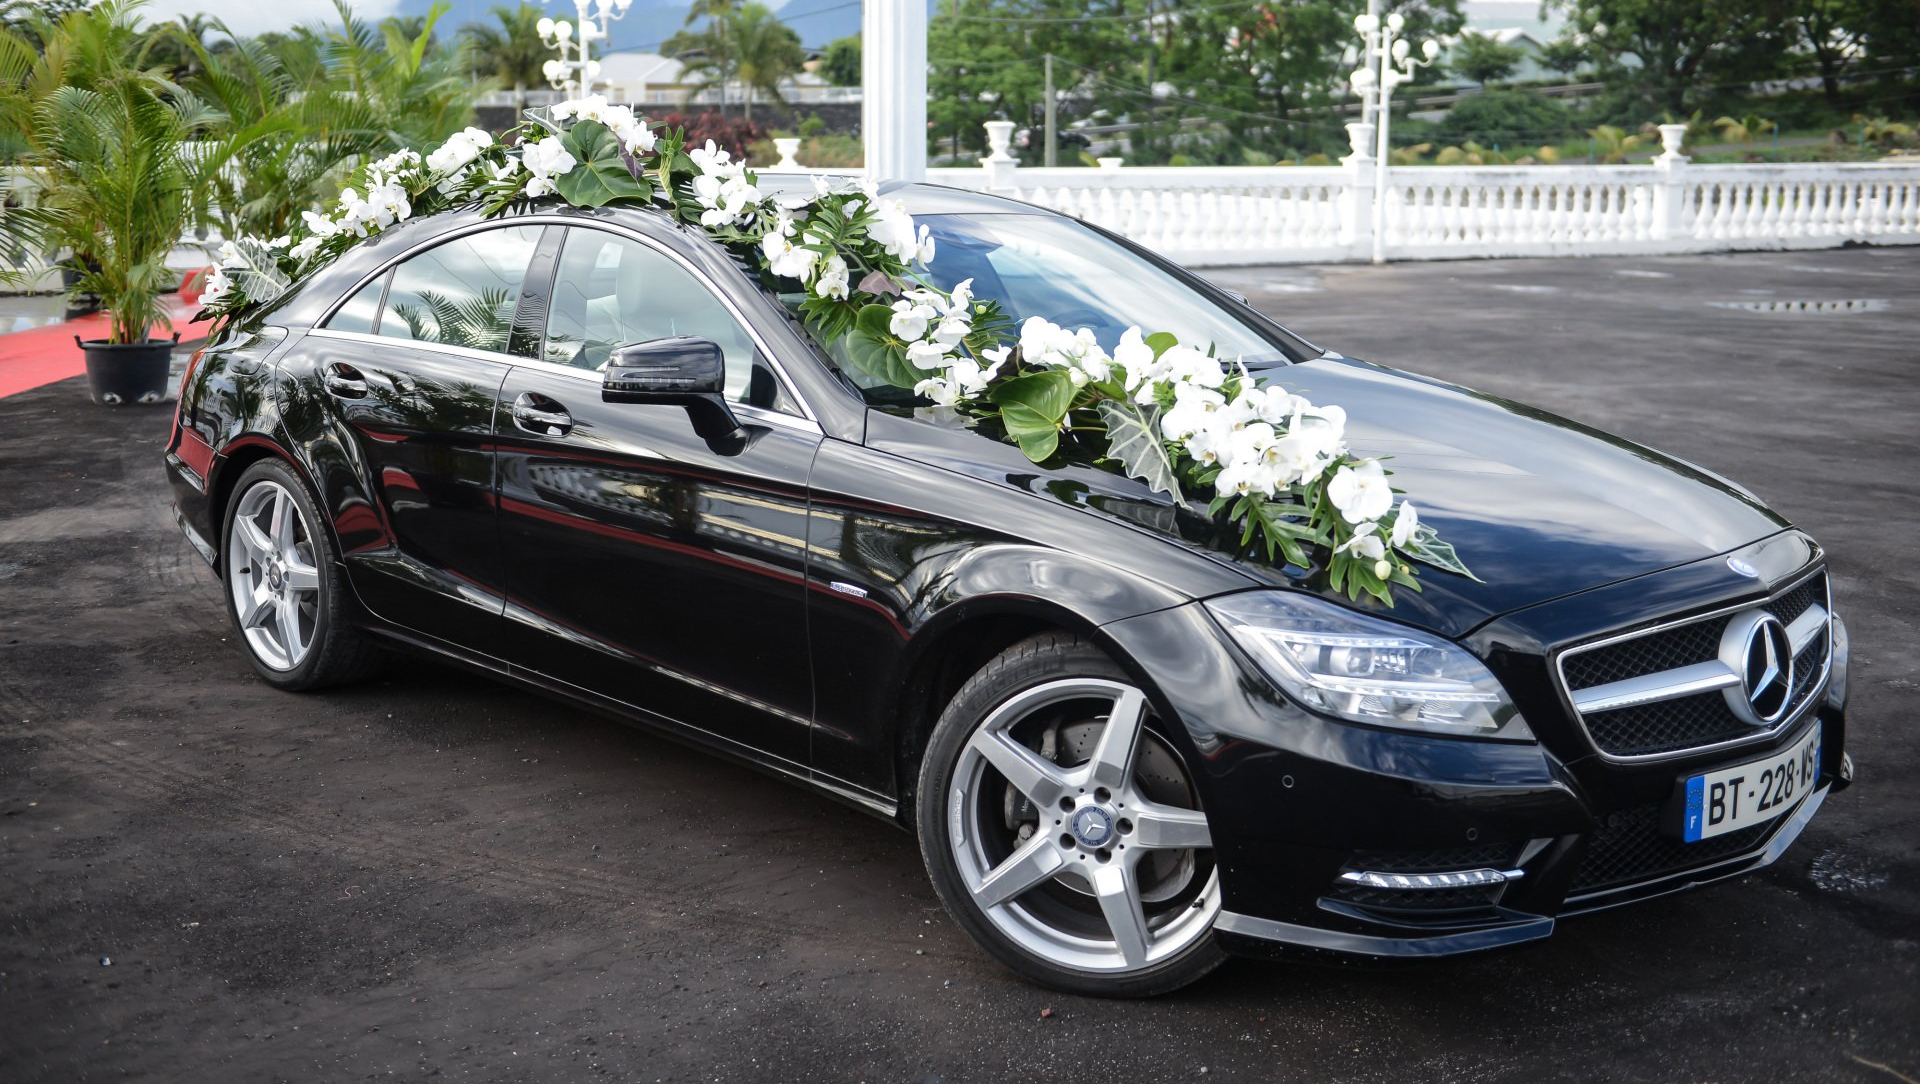 Mercedes décorée et fleurie pour un mariage